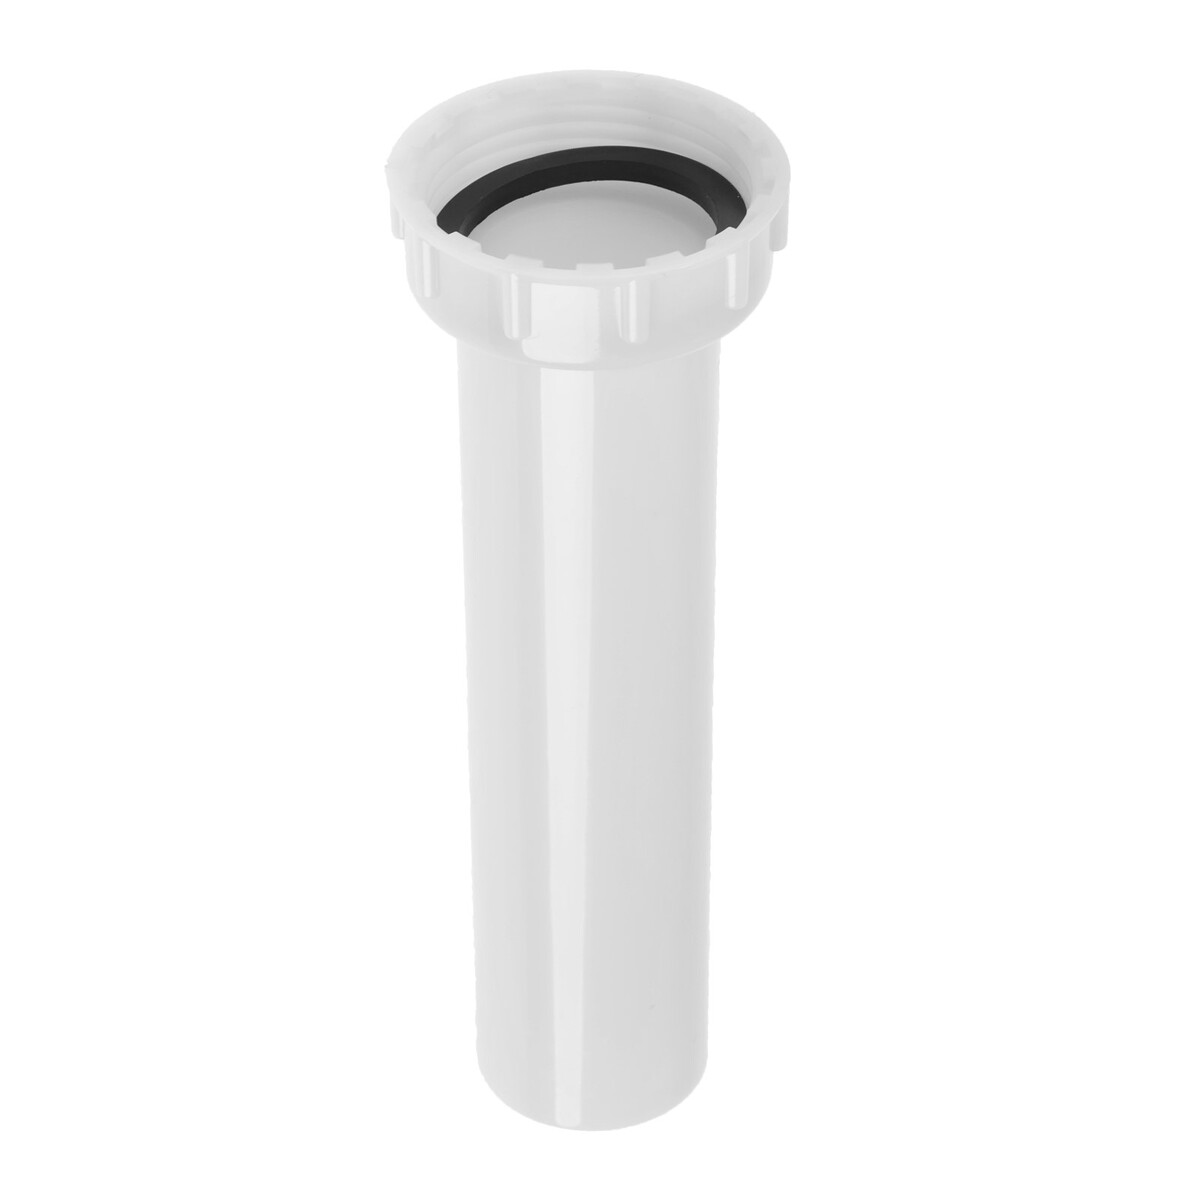 Удлинитель для сифона zein, 140 мм, 1 1/4 отражатель для сифона masterprof ис 131239 d 40 мм 73 x 40 x 15 мм белый пластик